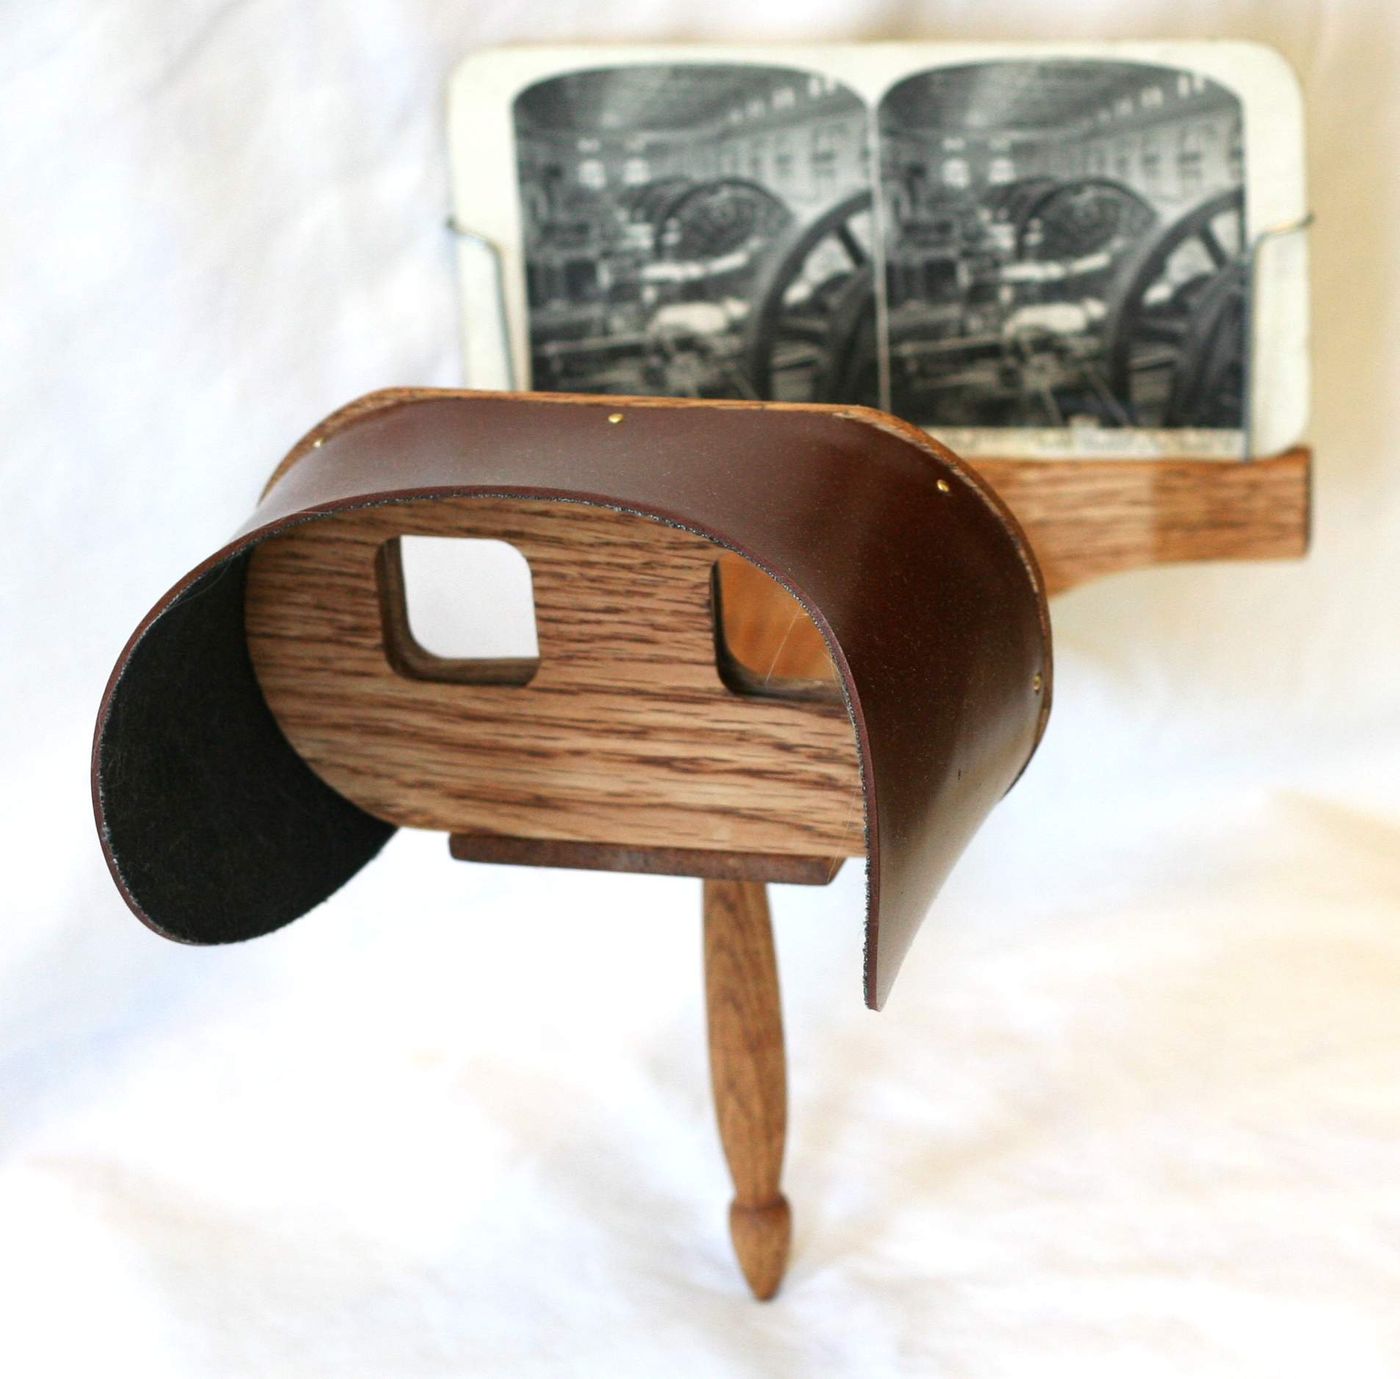 stereoscope, credit: public domain